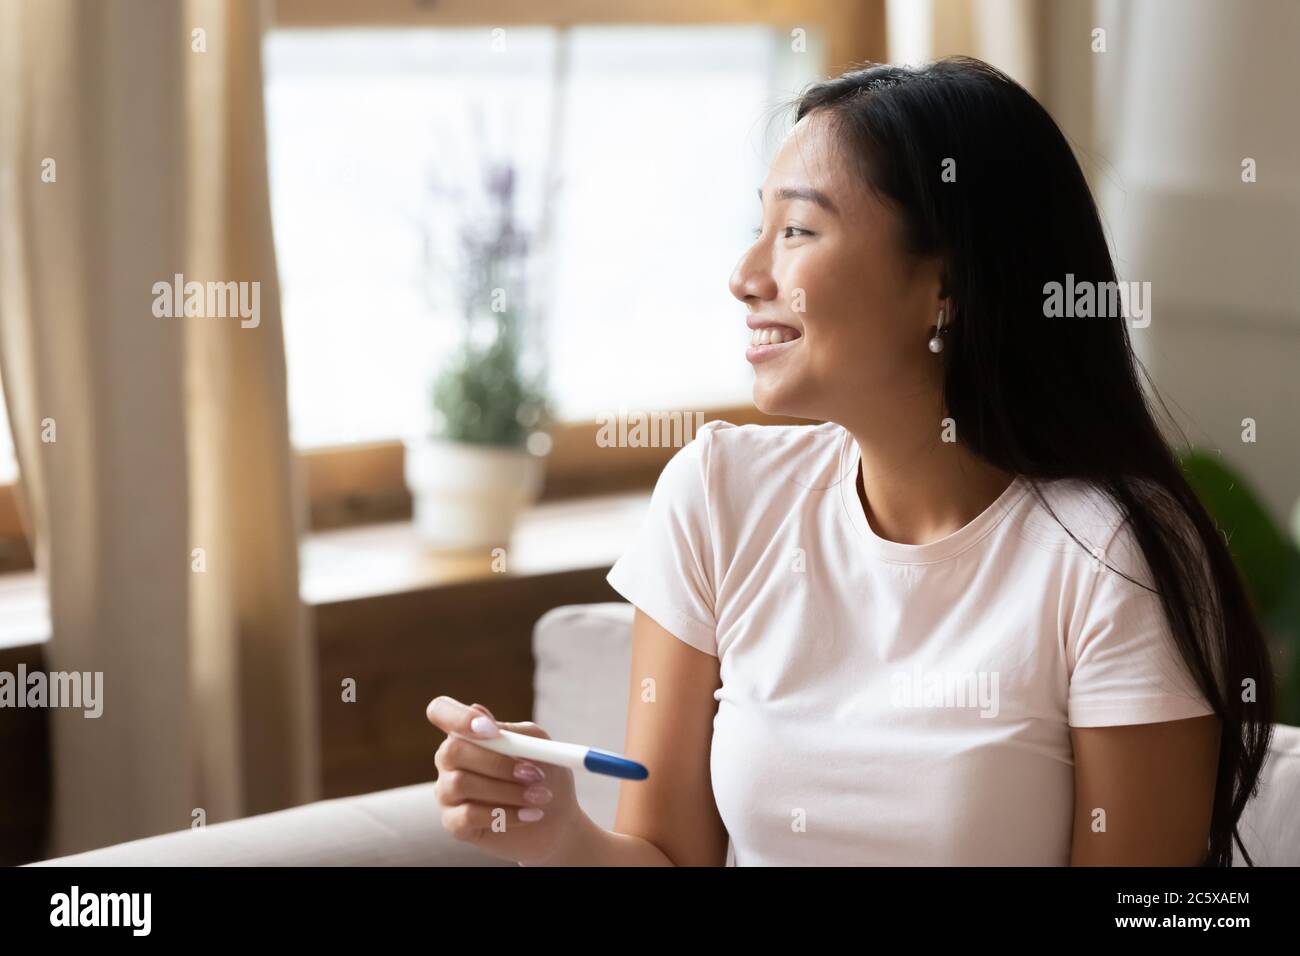 Jeune femme asiatique rêveuse qui tient un test de grossesse. Banque D'Images